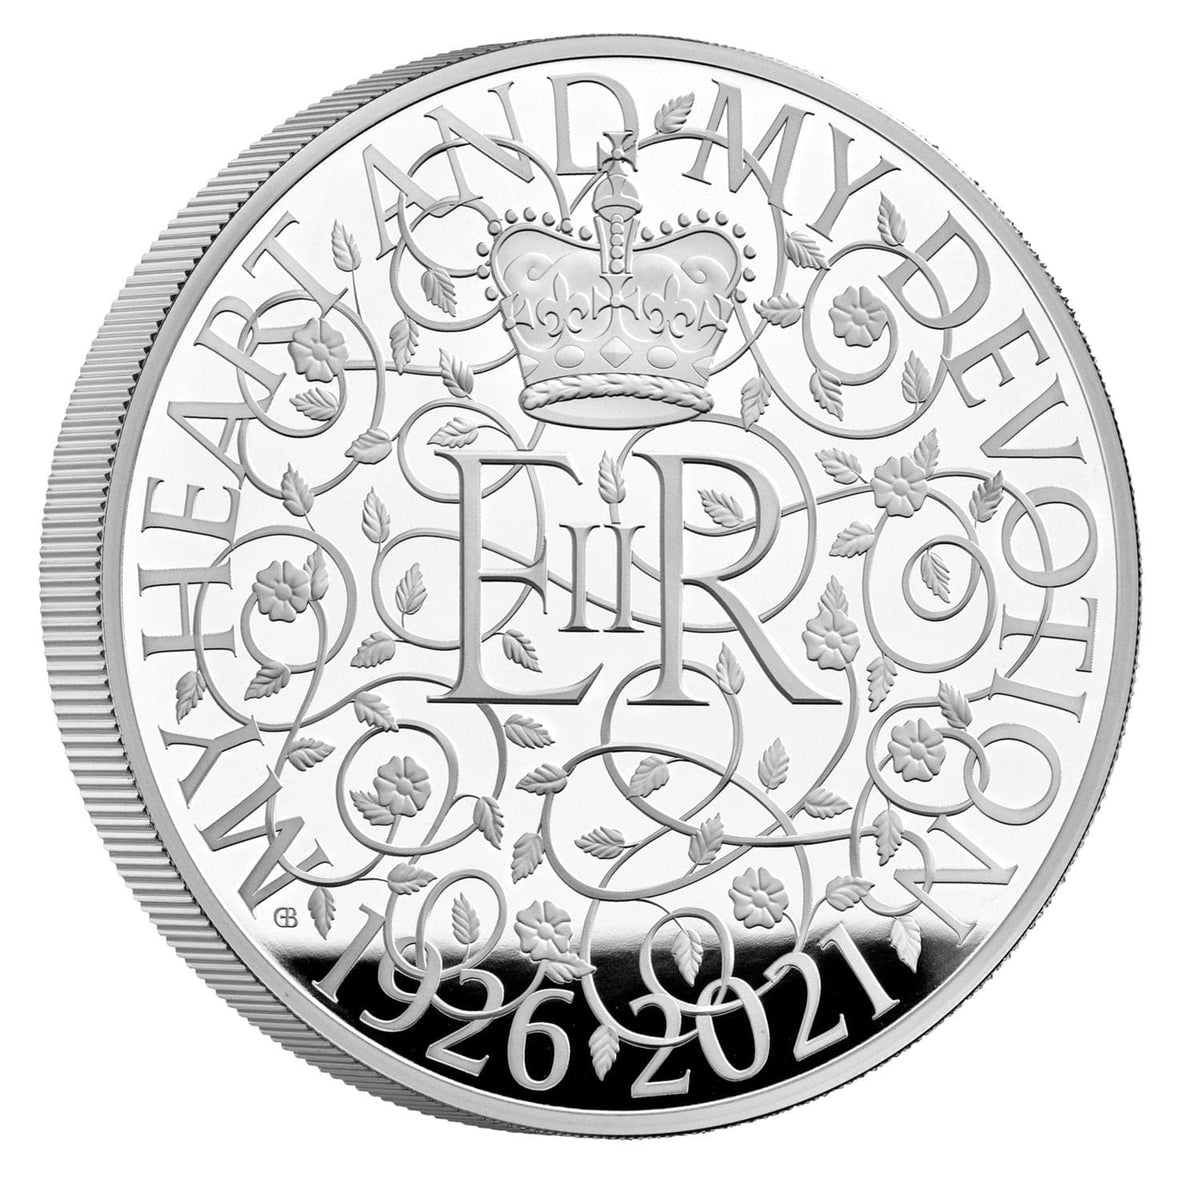 2021年 イギリス エリザベス女王生誕記念 1キロ銀貨 プルーフ | アンティークコインギャラリア